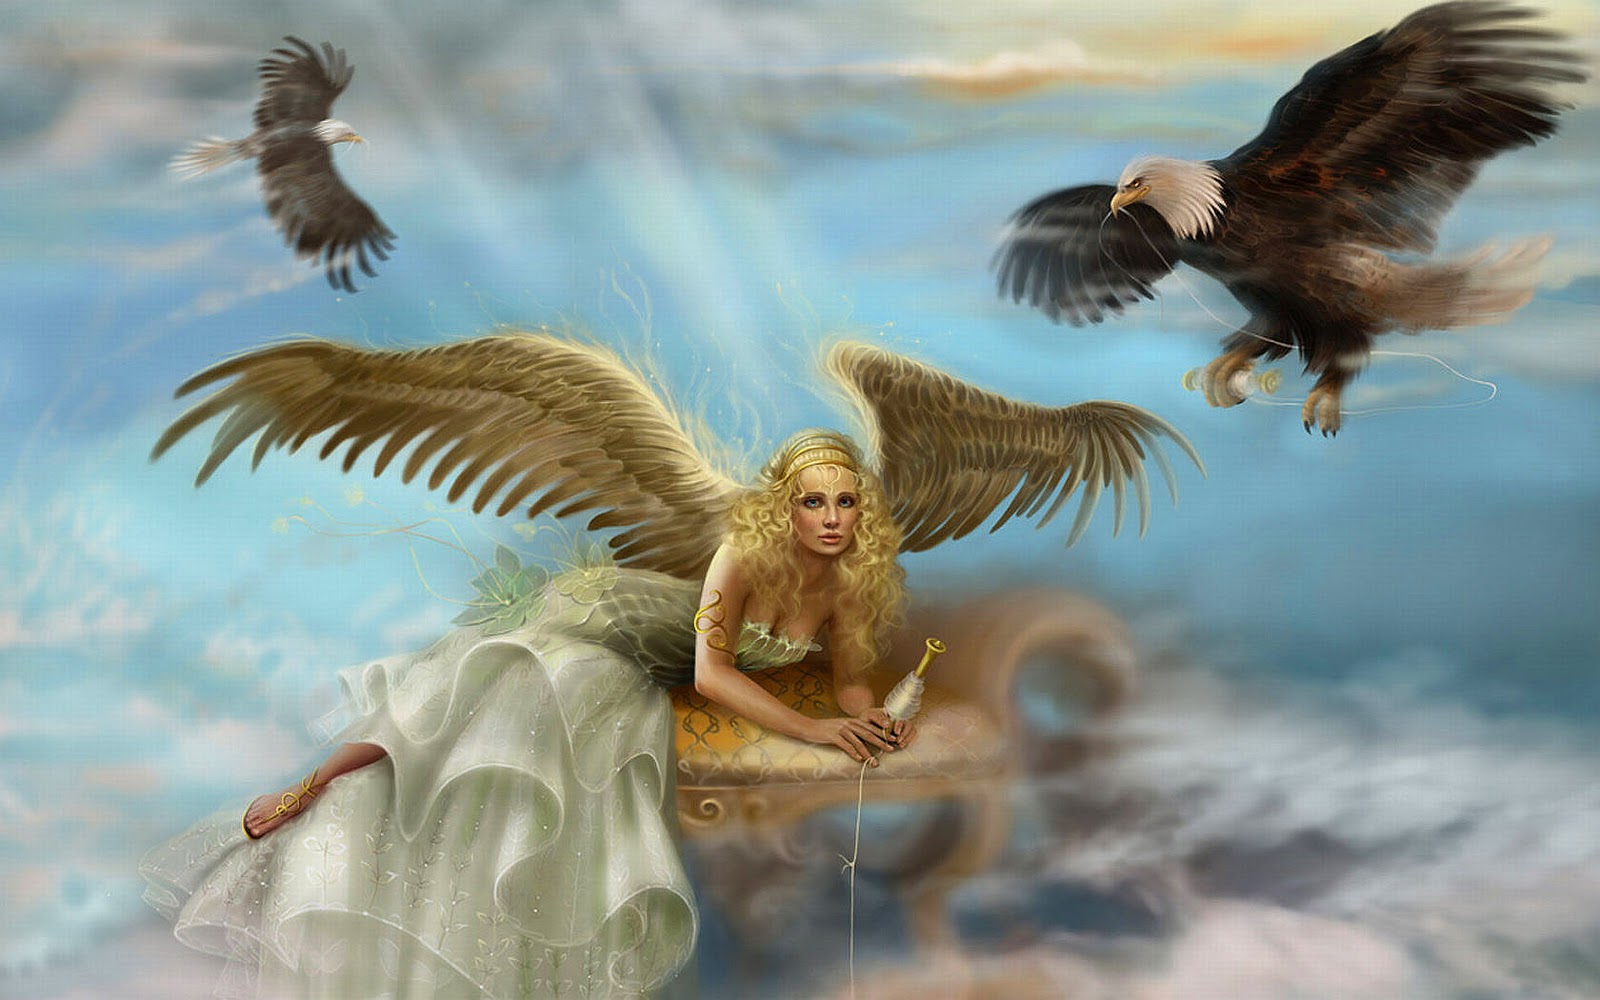 fond d'écran ange,ange,mythologie,créature surnaturelle,aile,ciel